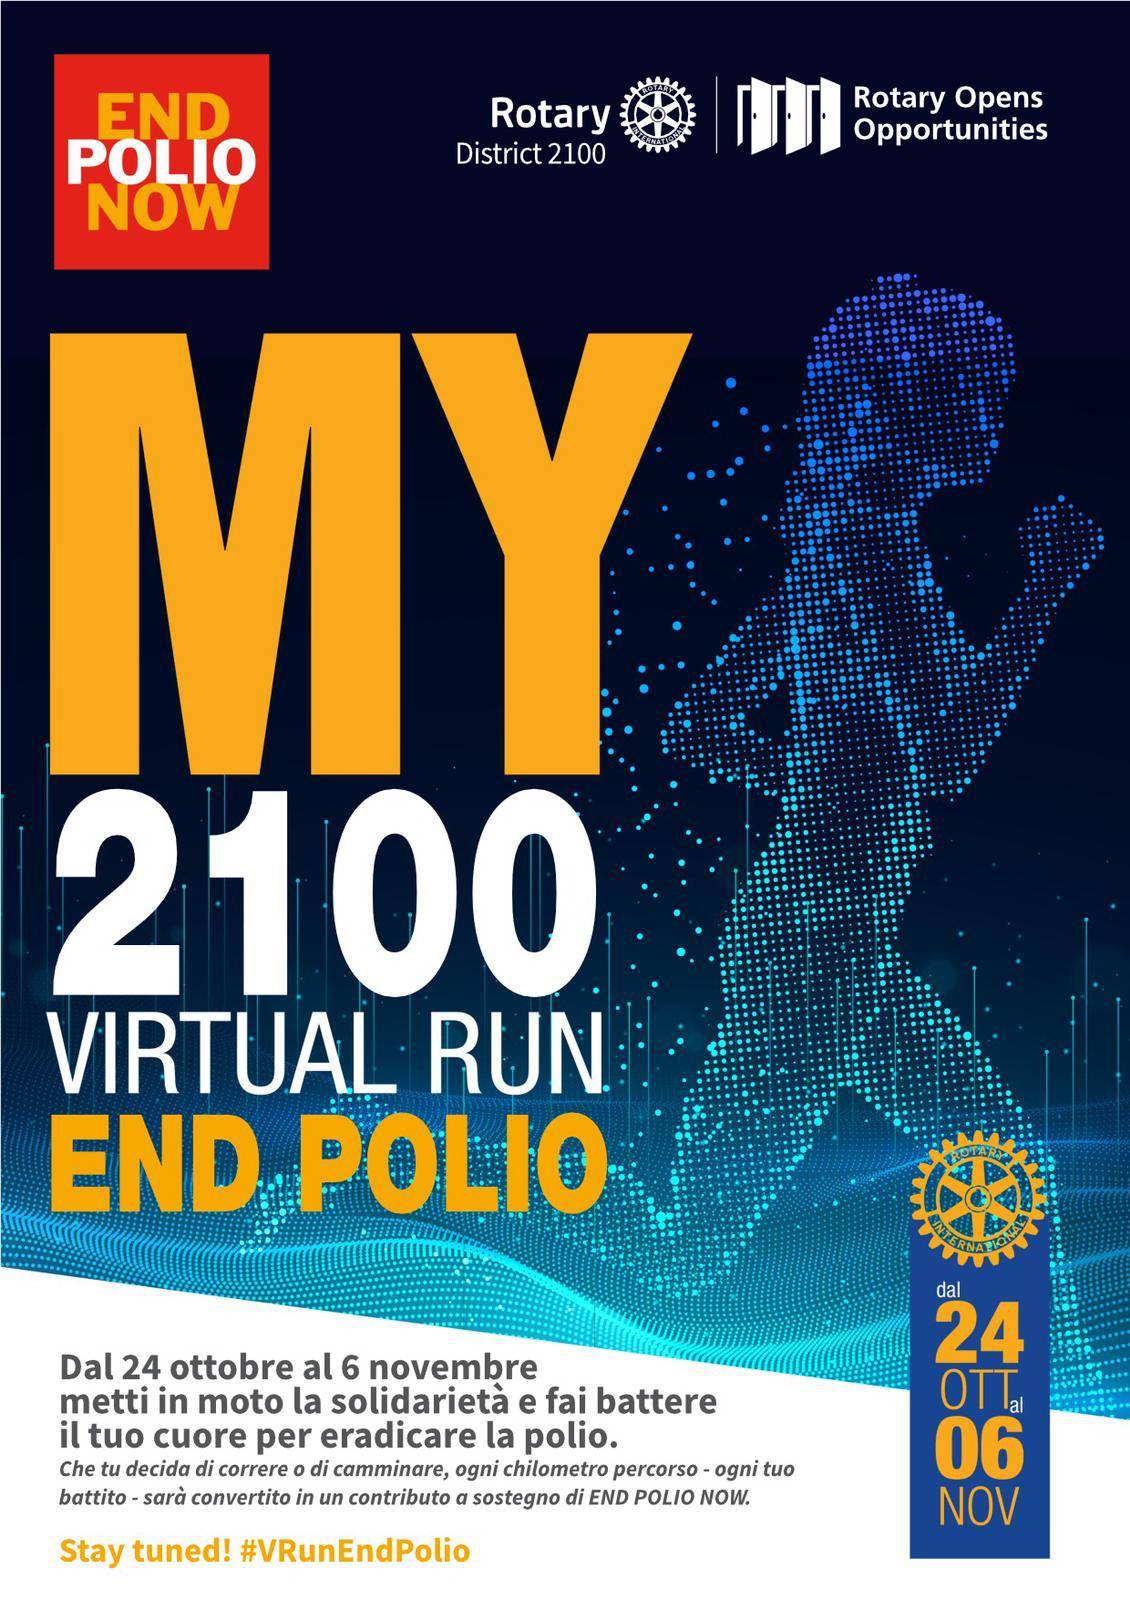 End Polio Now: Rotarian Virtual Run